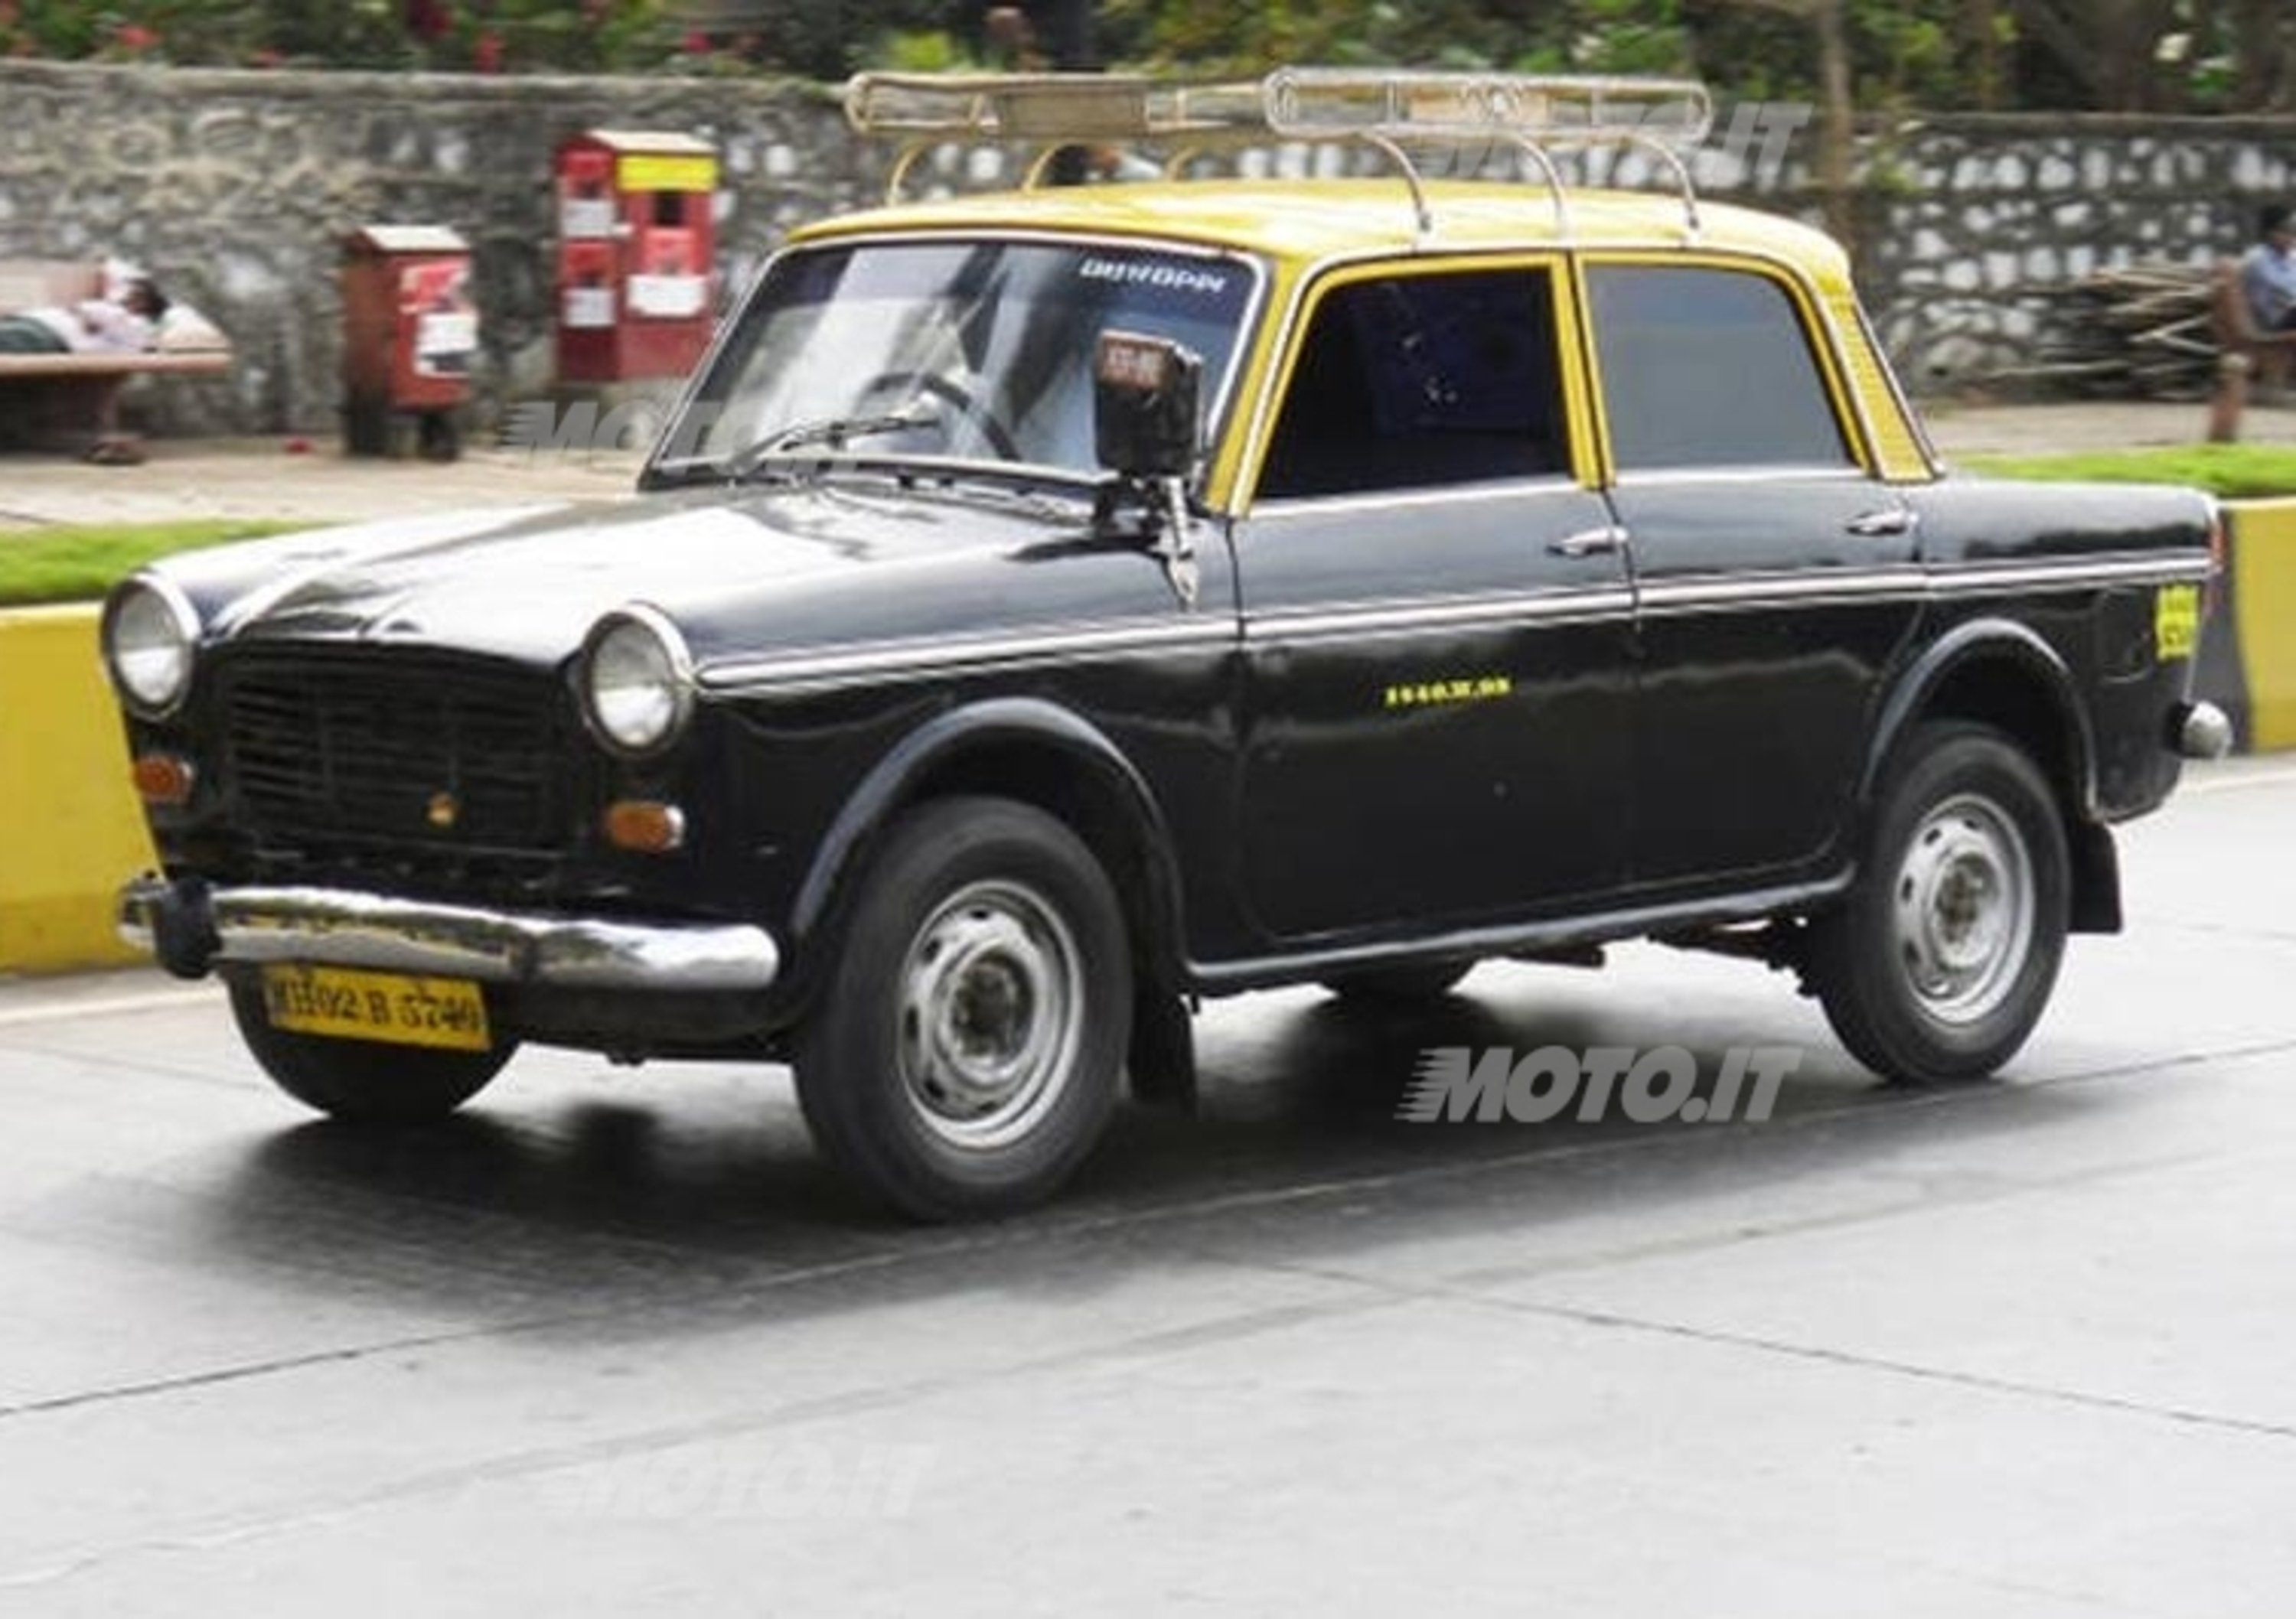 India: addio ai mitici taxi Padmini basati sulla Fiat 1100 D?